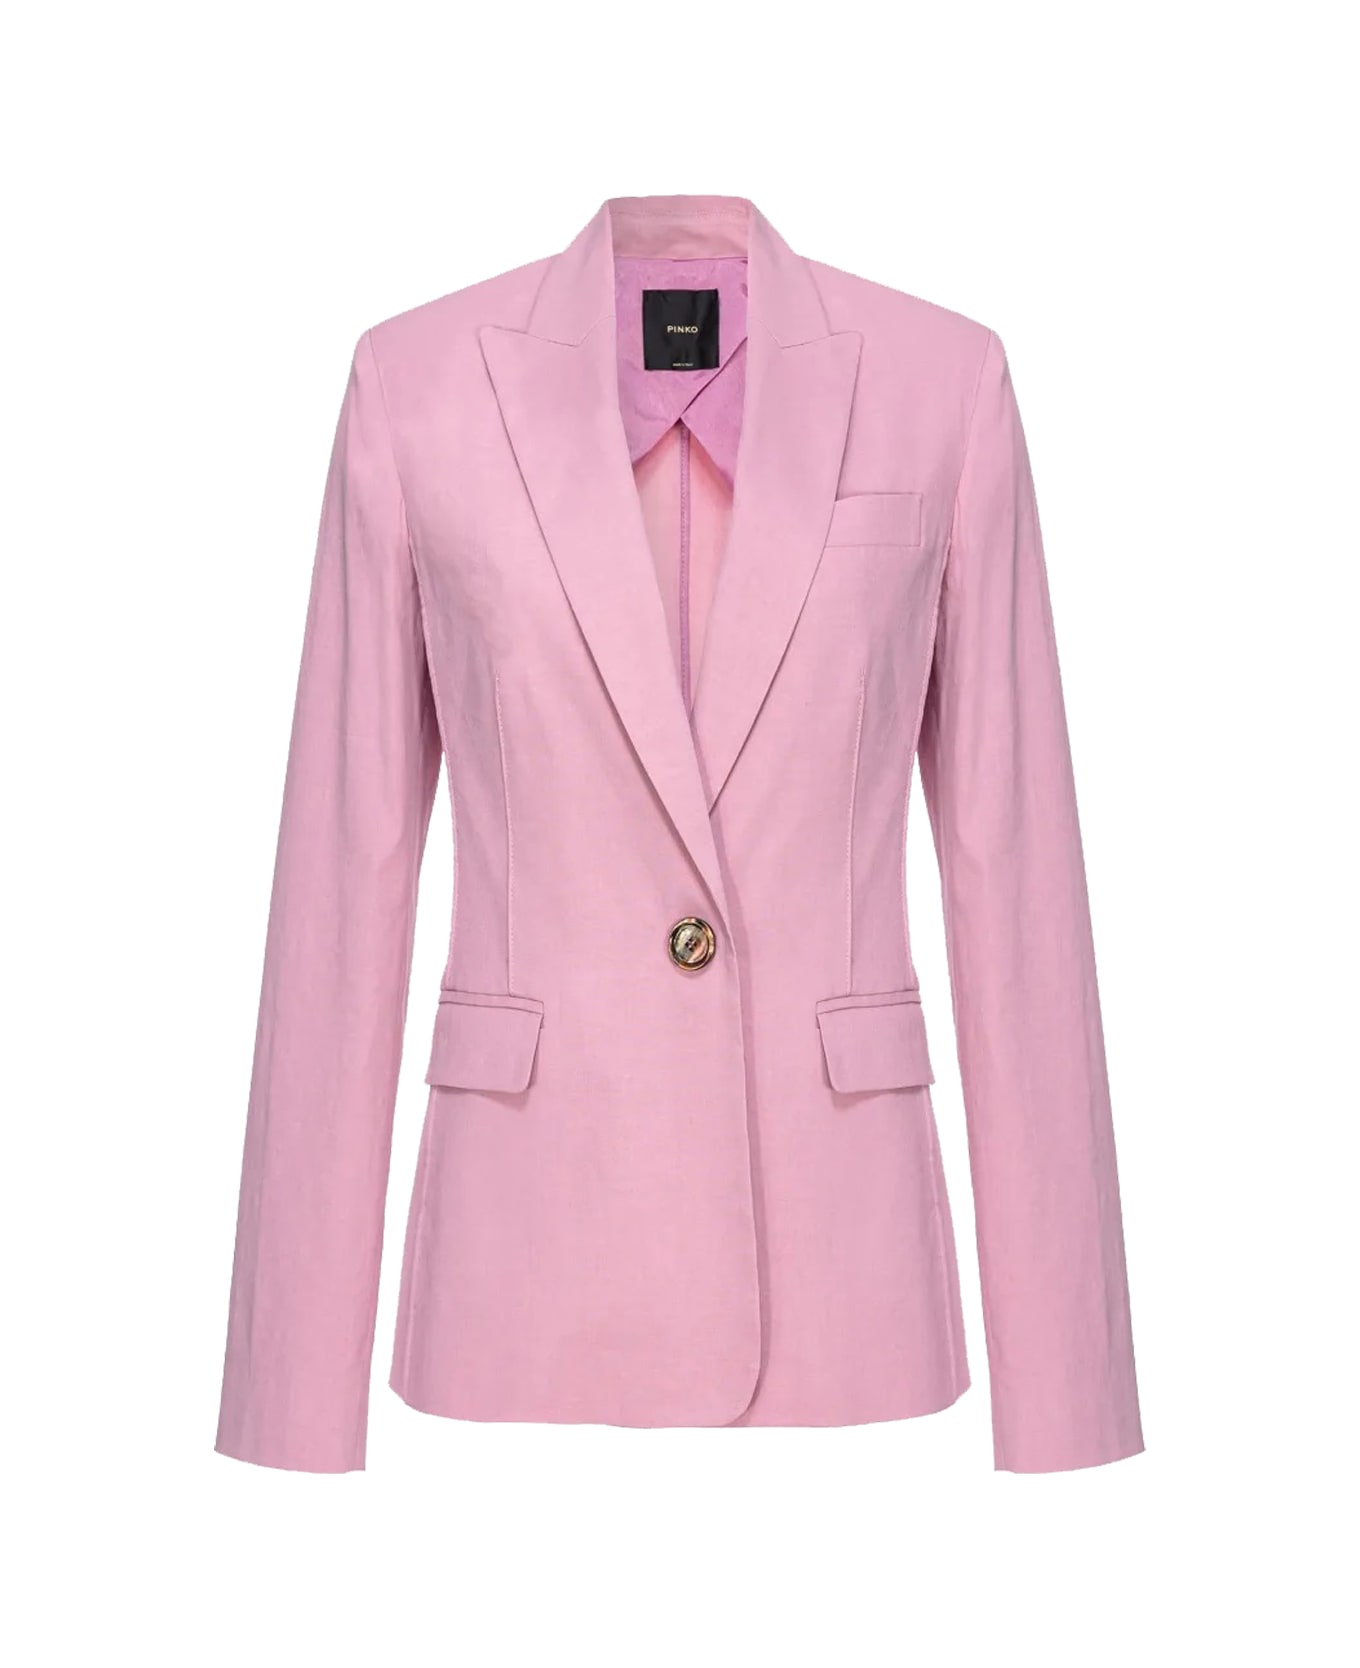 Pinko Jacket - Pink